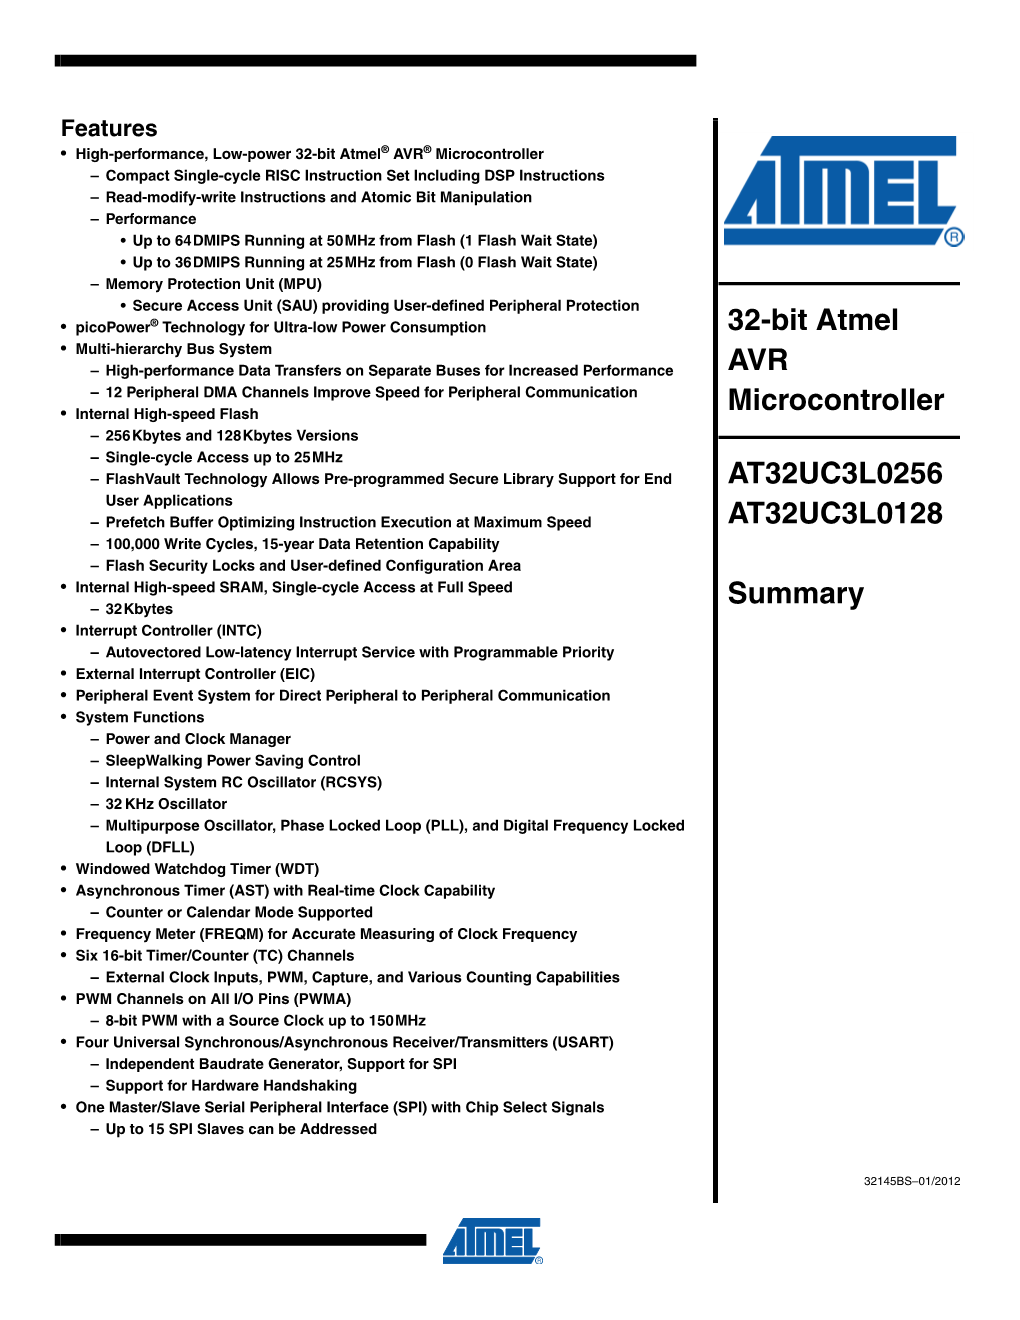 32-Bit Atmel AVR Microcontroller AT32UC3L0256 AT32UC3L0128